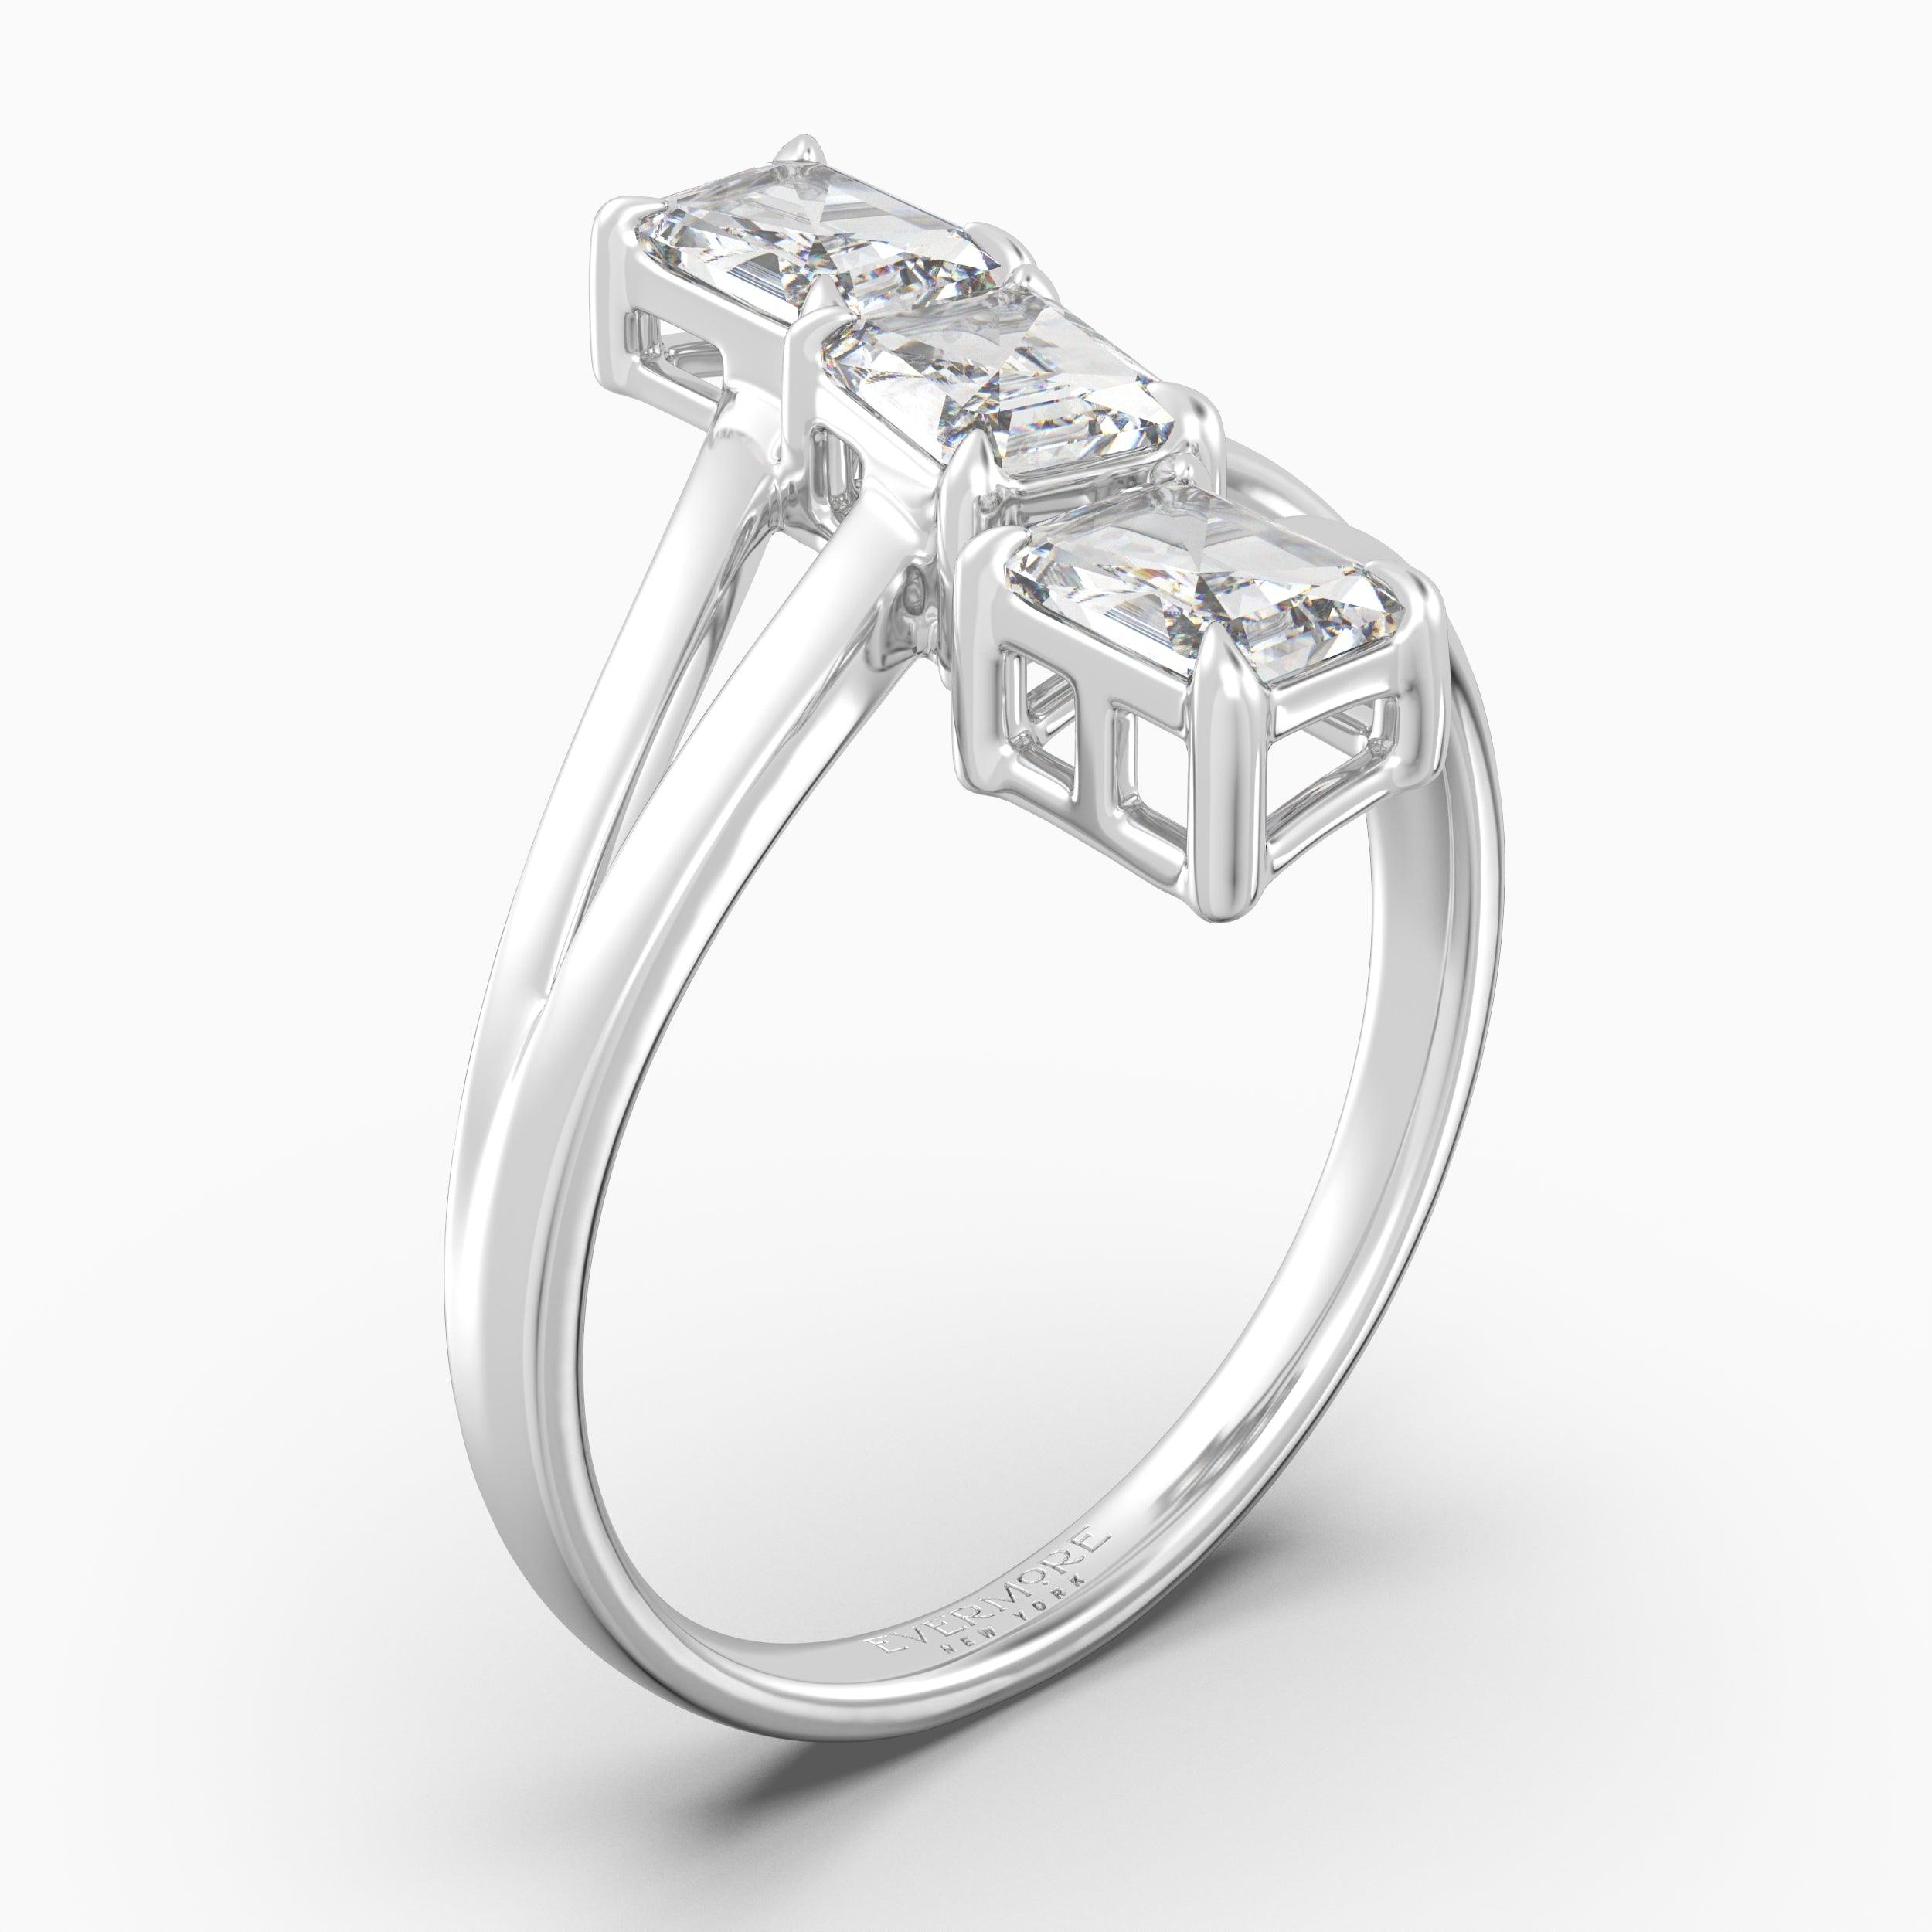 The Triune Emerald Cut - White Gold / 0.5 ct - Evermore Diamonds